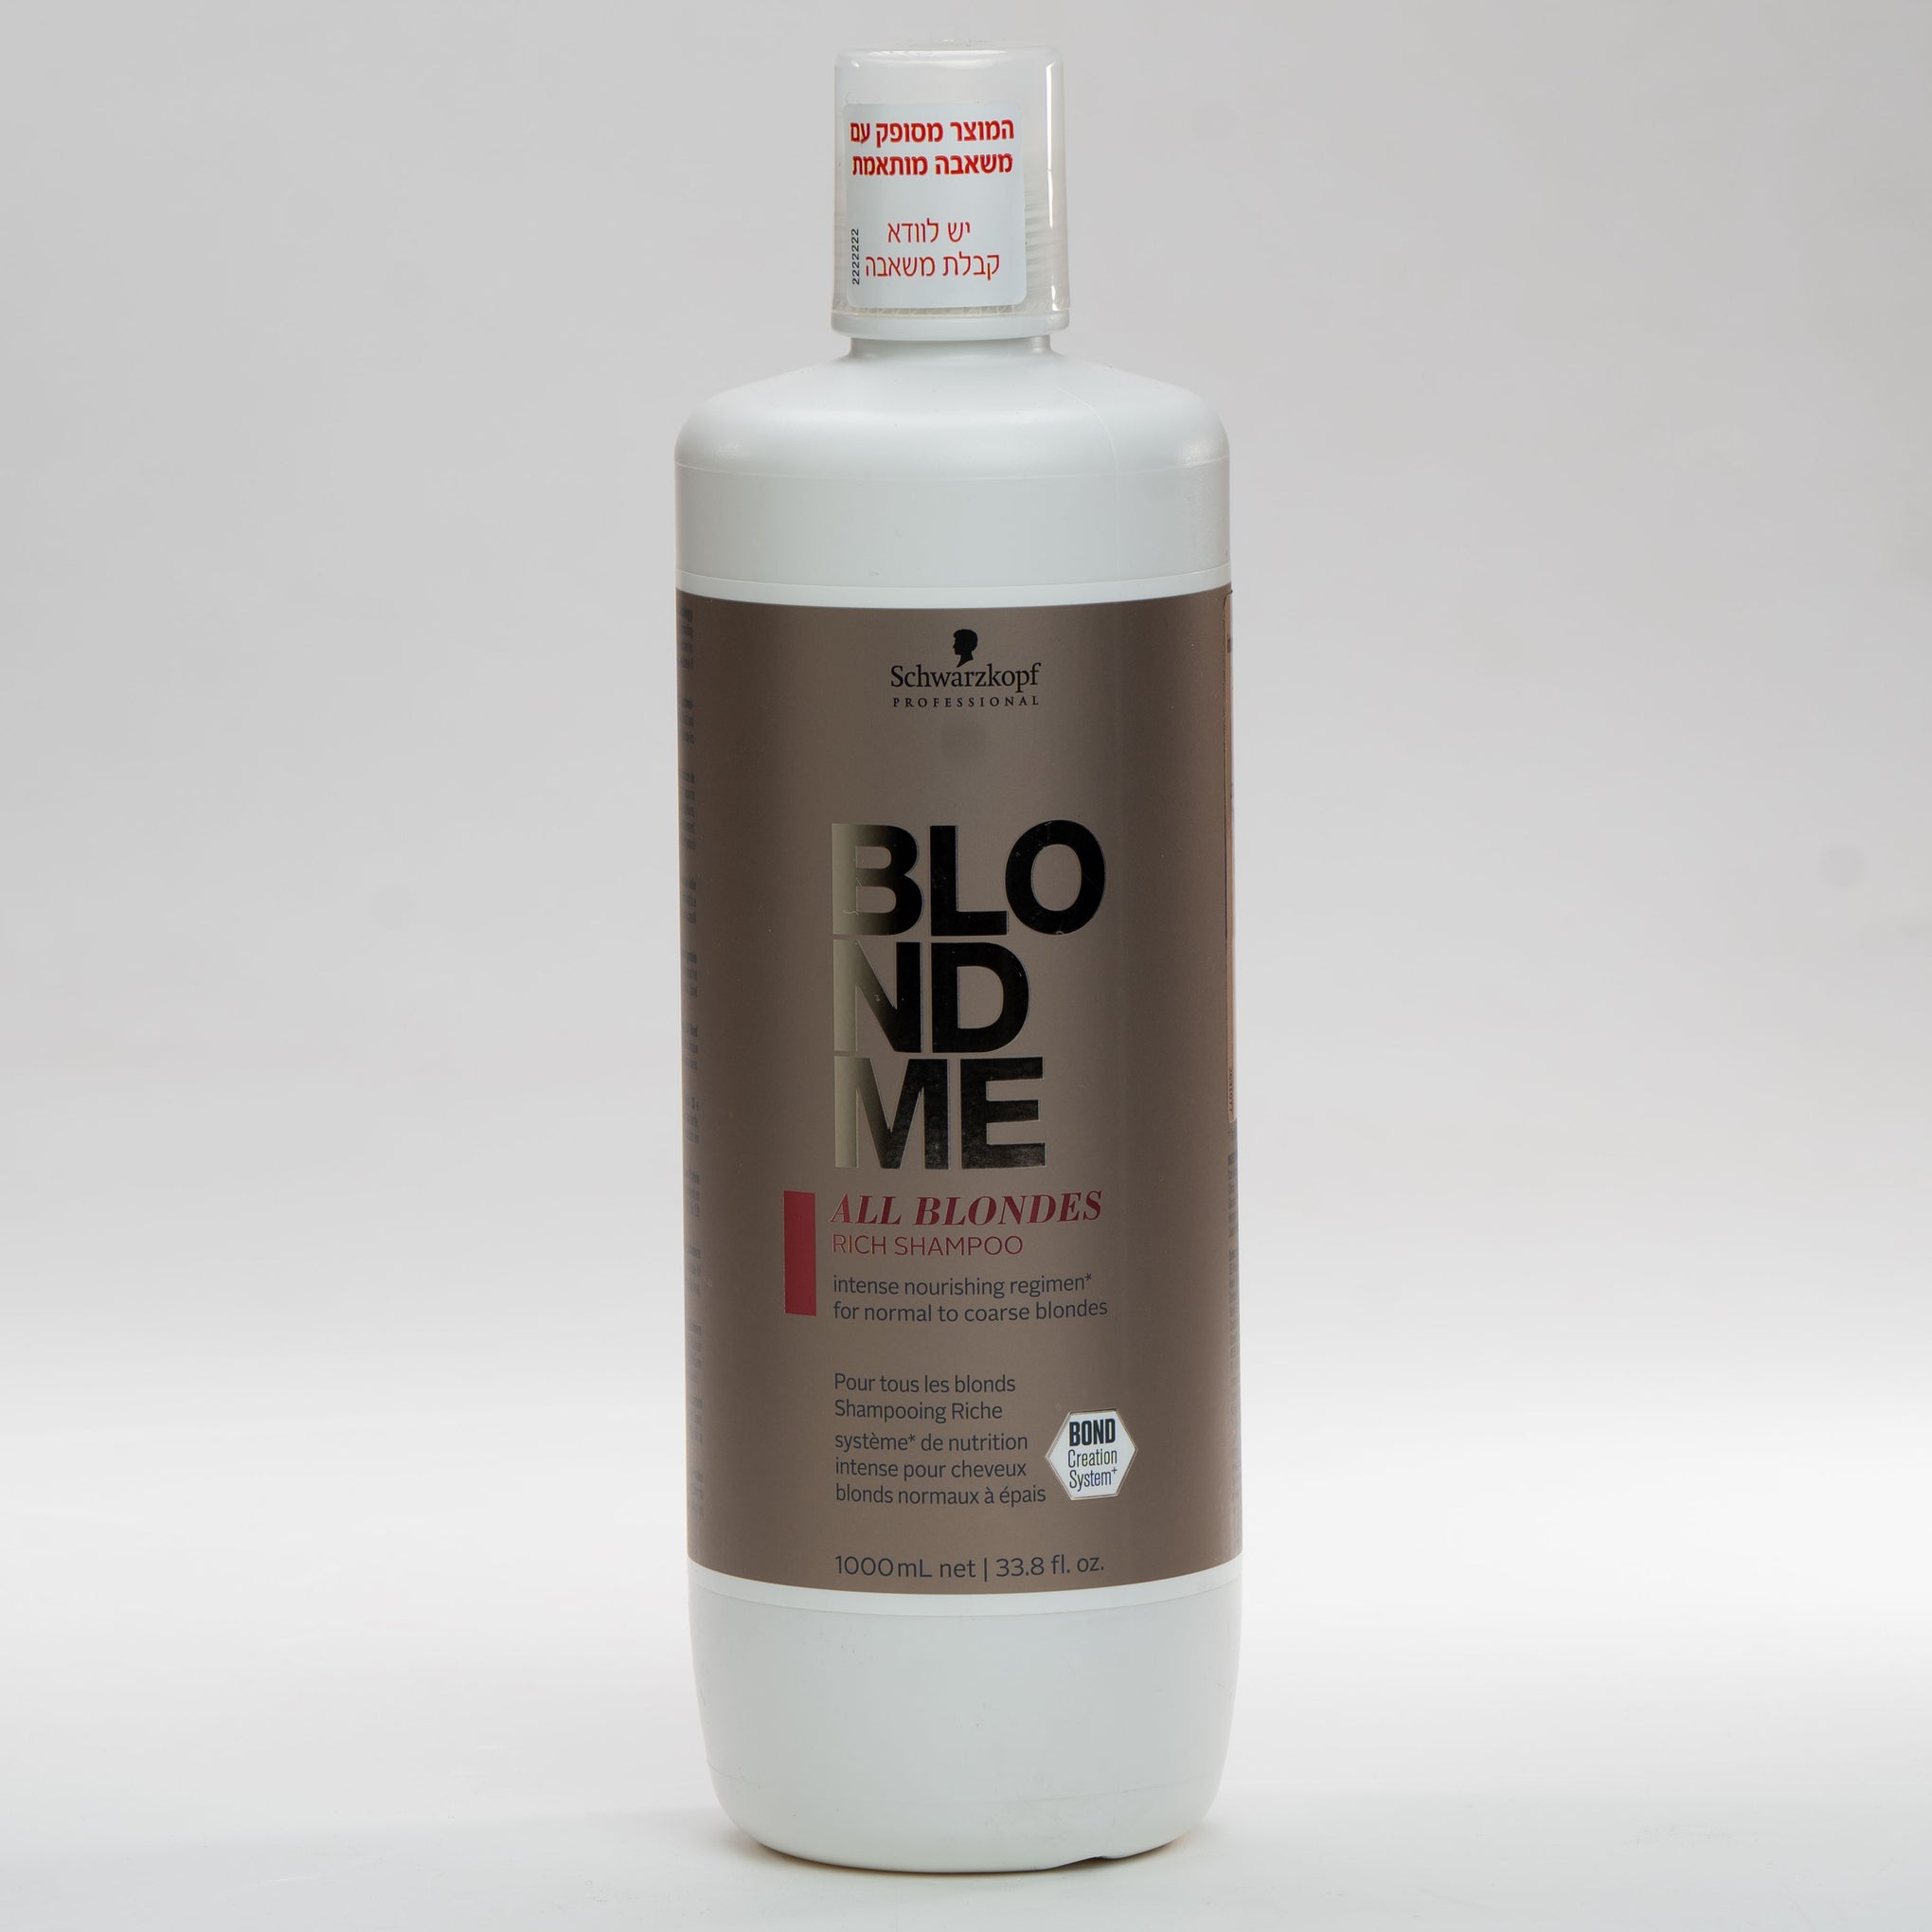 שמפו BLONDME מועשר בלחות לשיער בלונדיני רגיל עד עבה שוורצקופף 1000 מ"ל